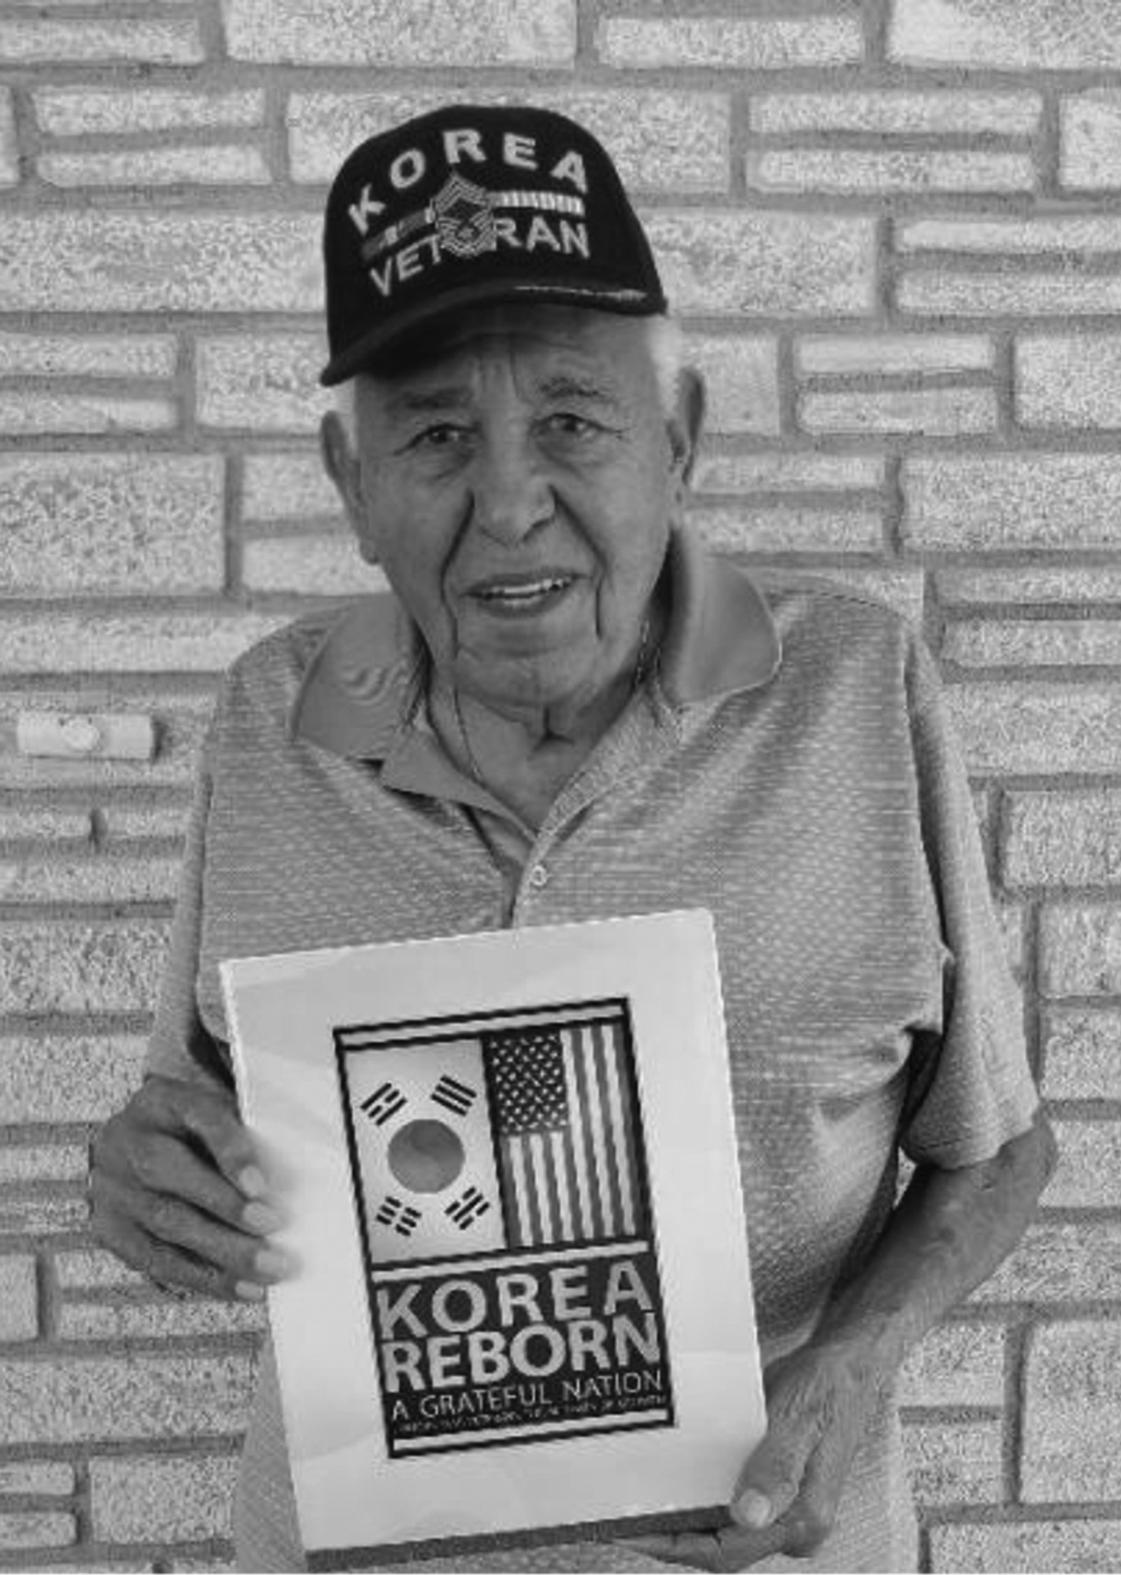 Local Korean War Veteran selected for Honor Flight